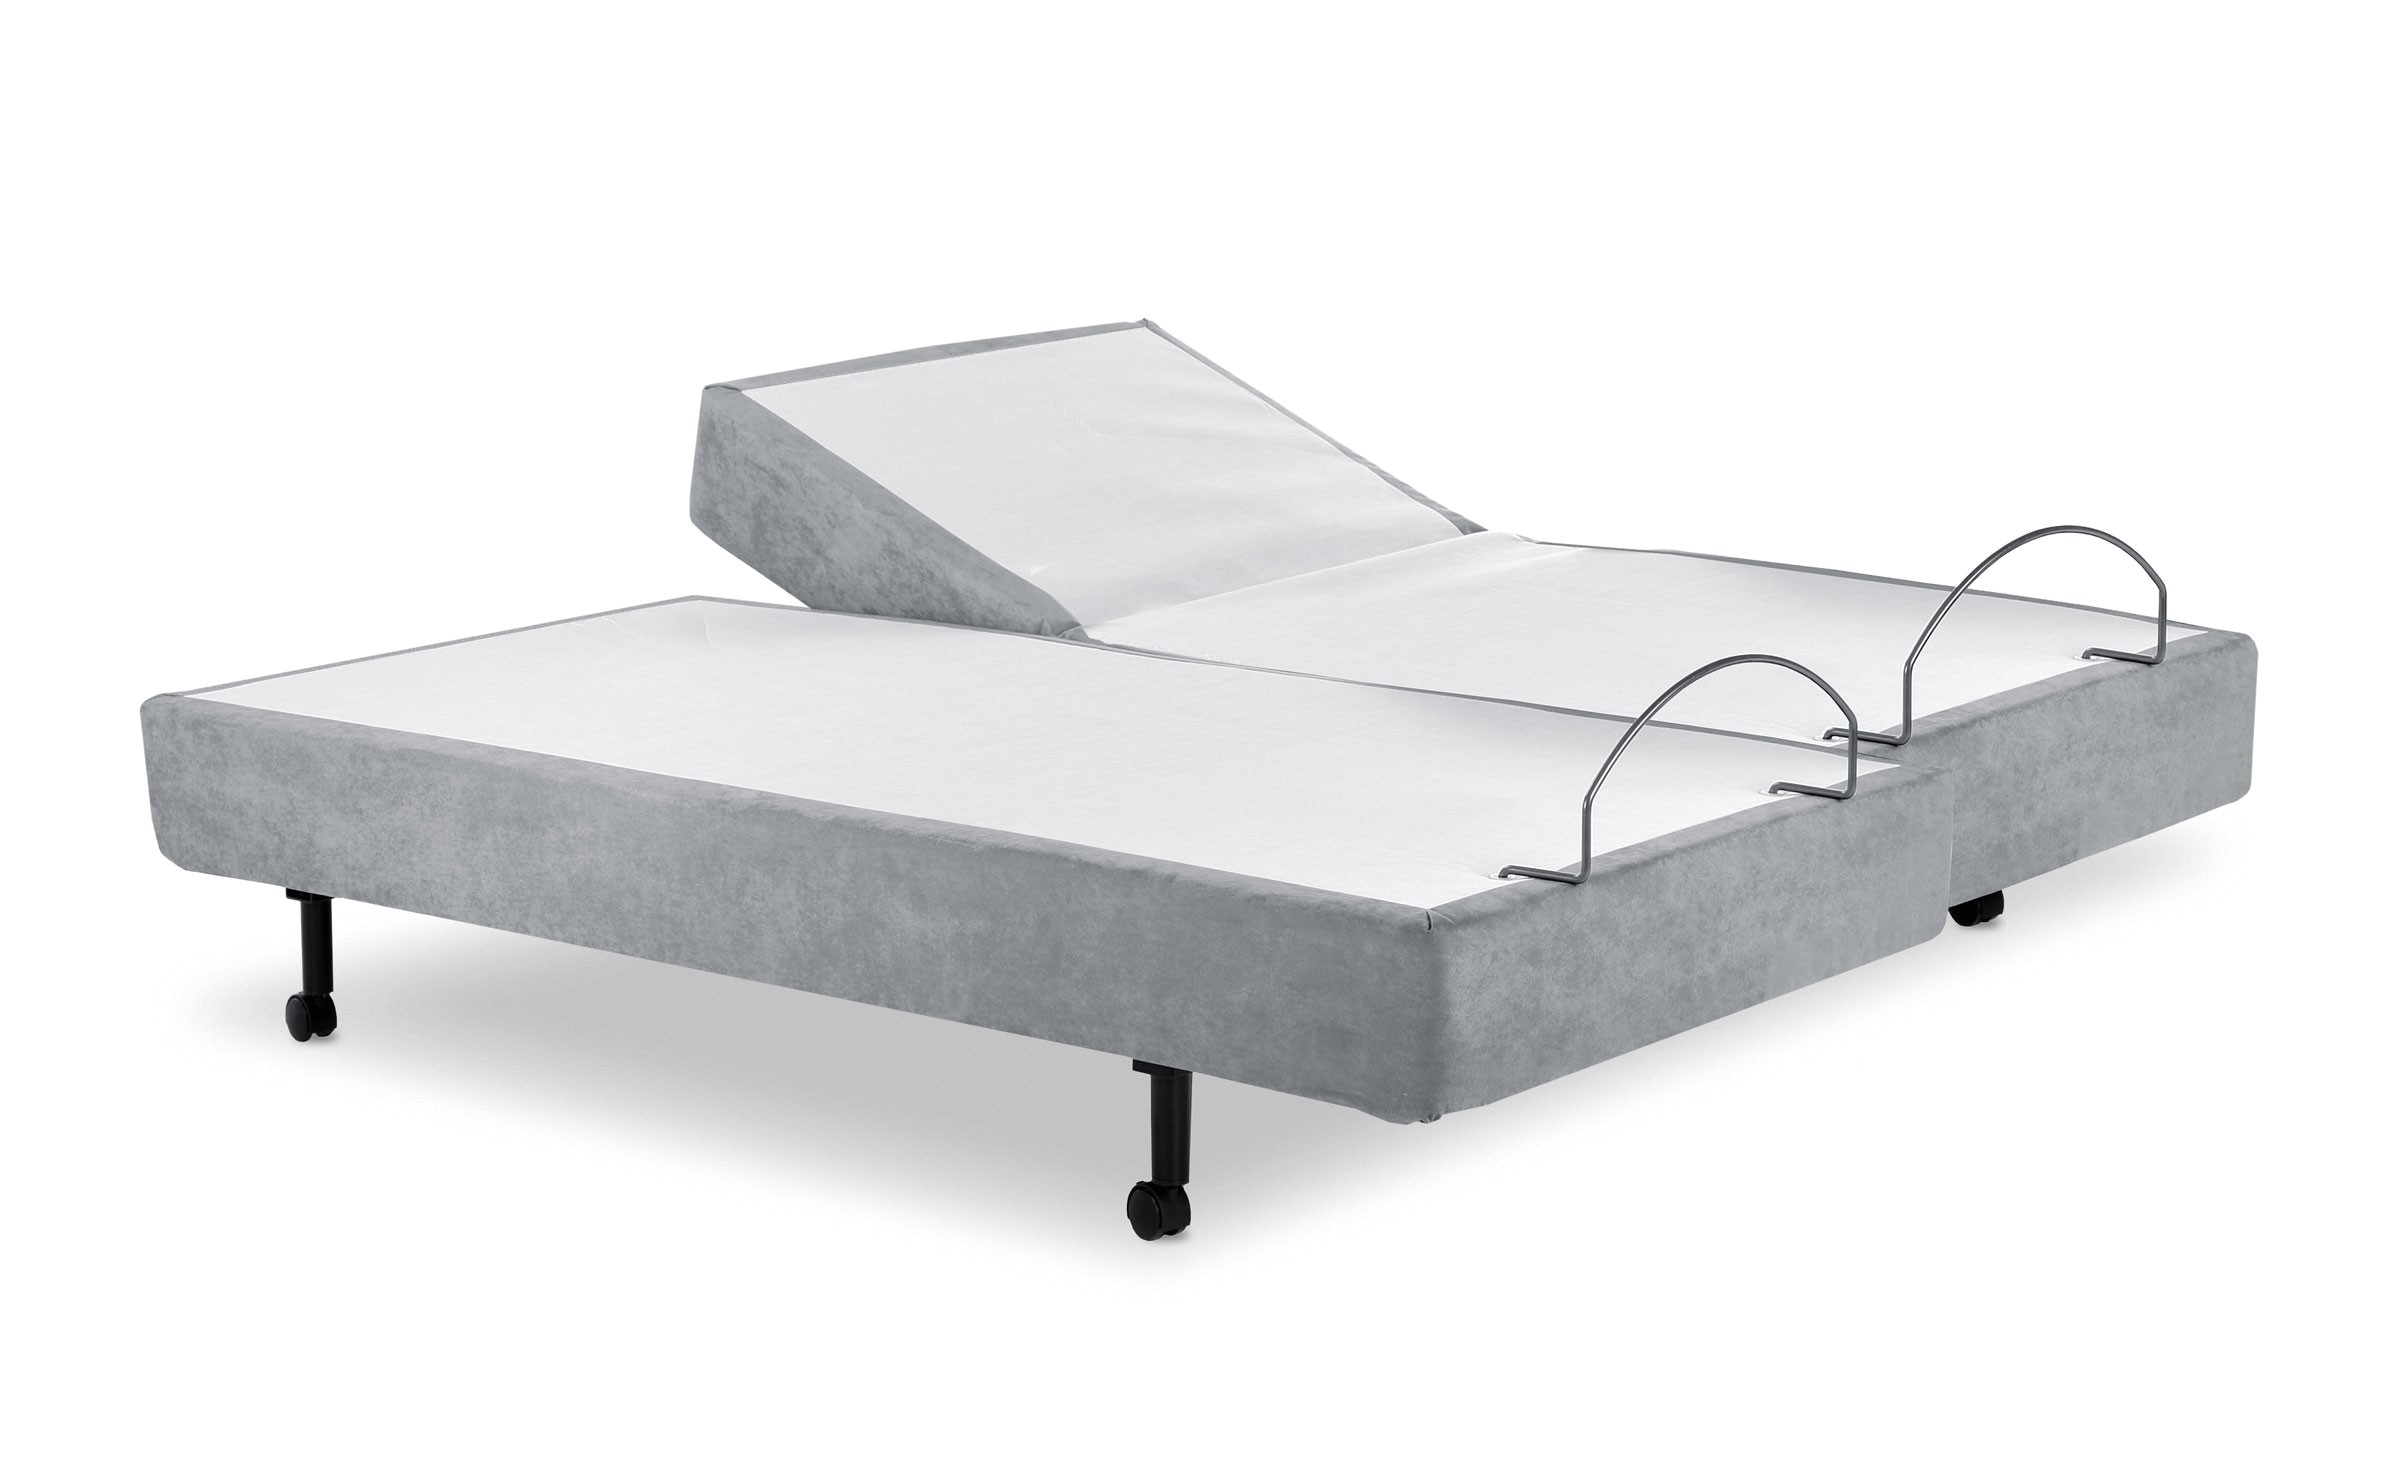 adjustable bed brands reviewed top 6 brands